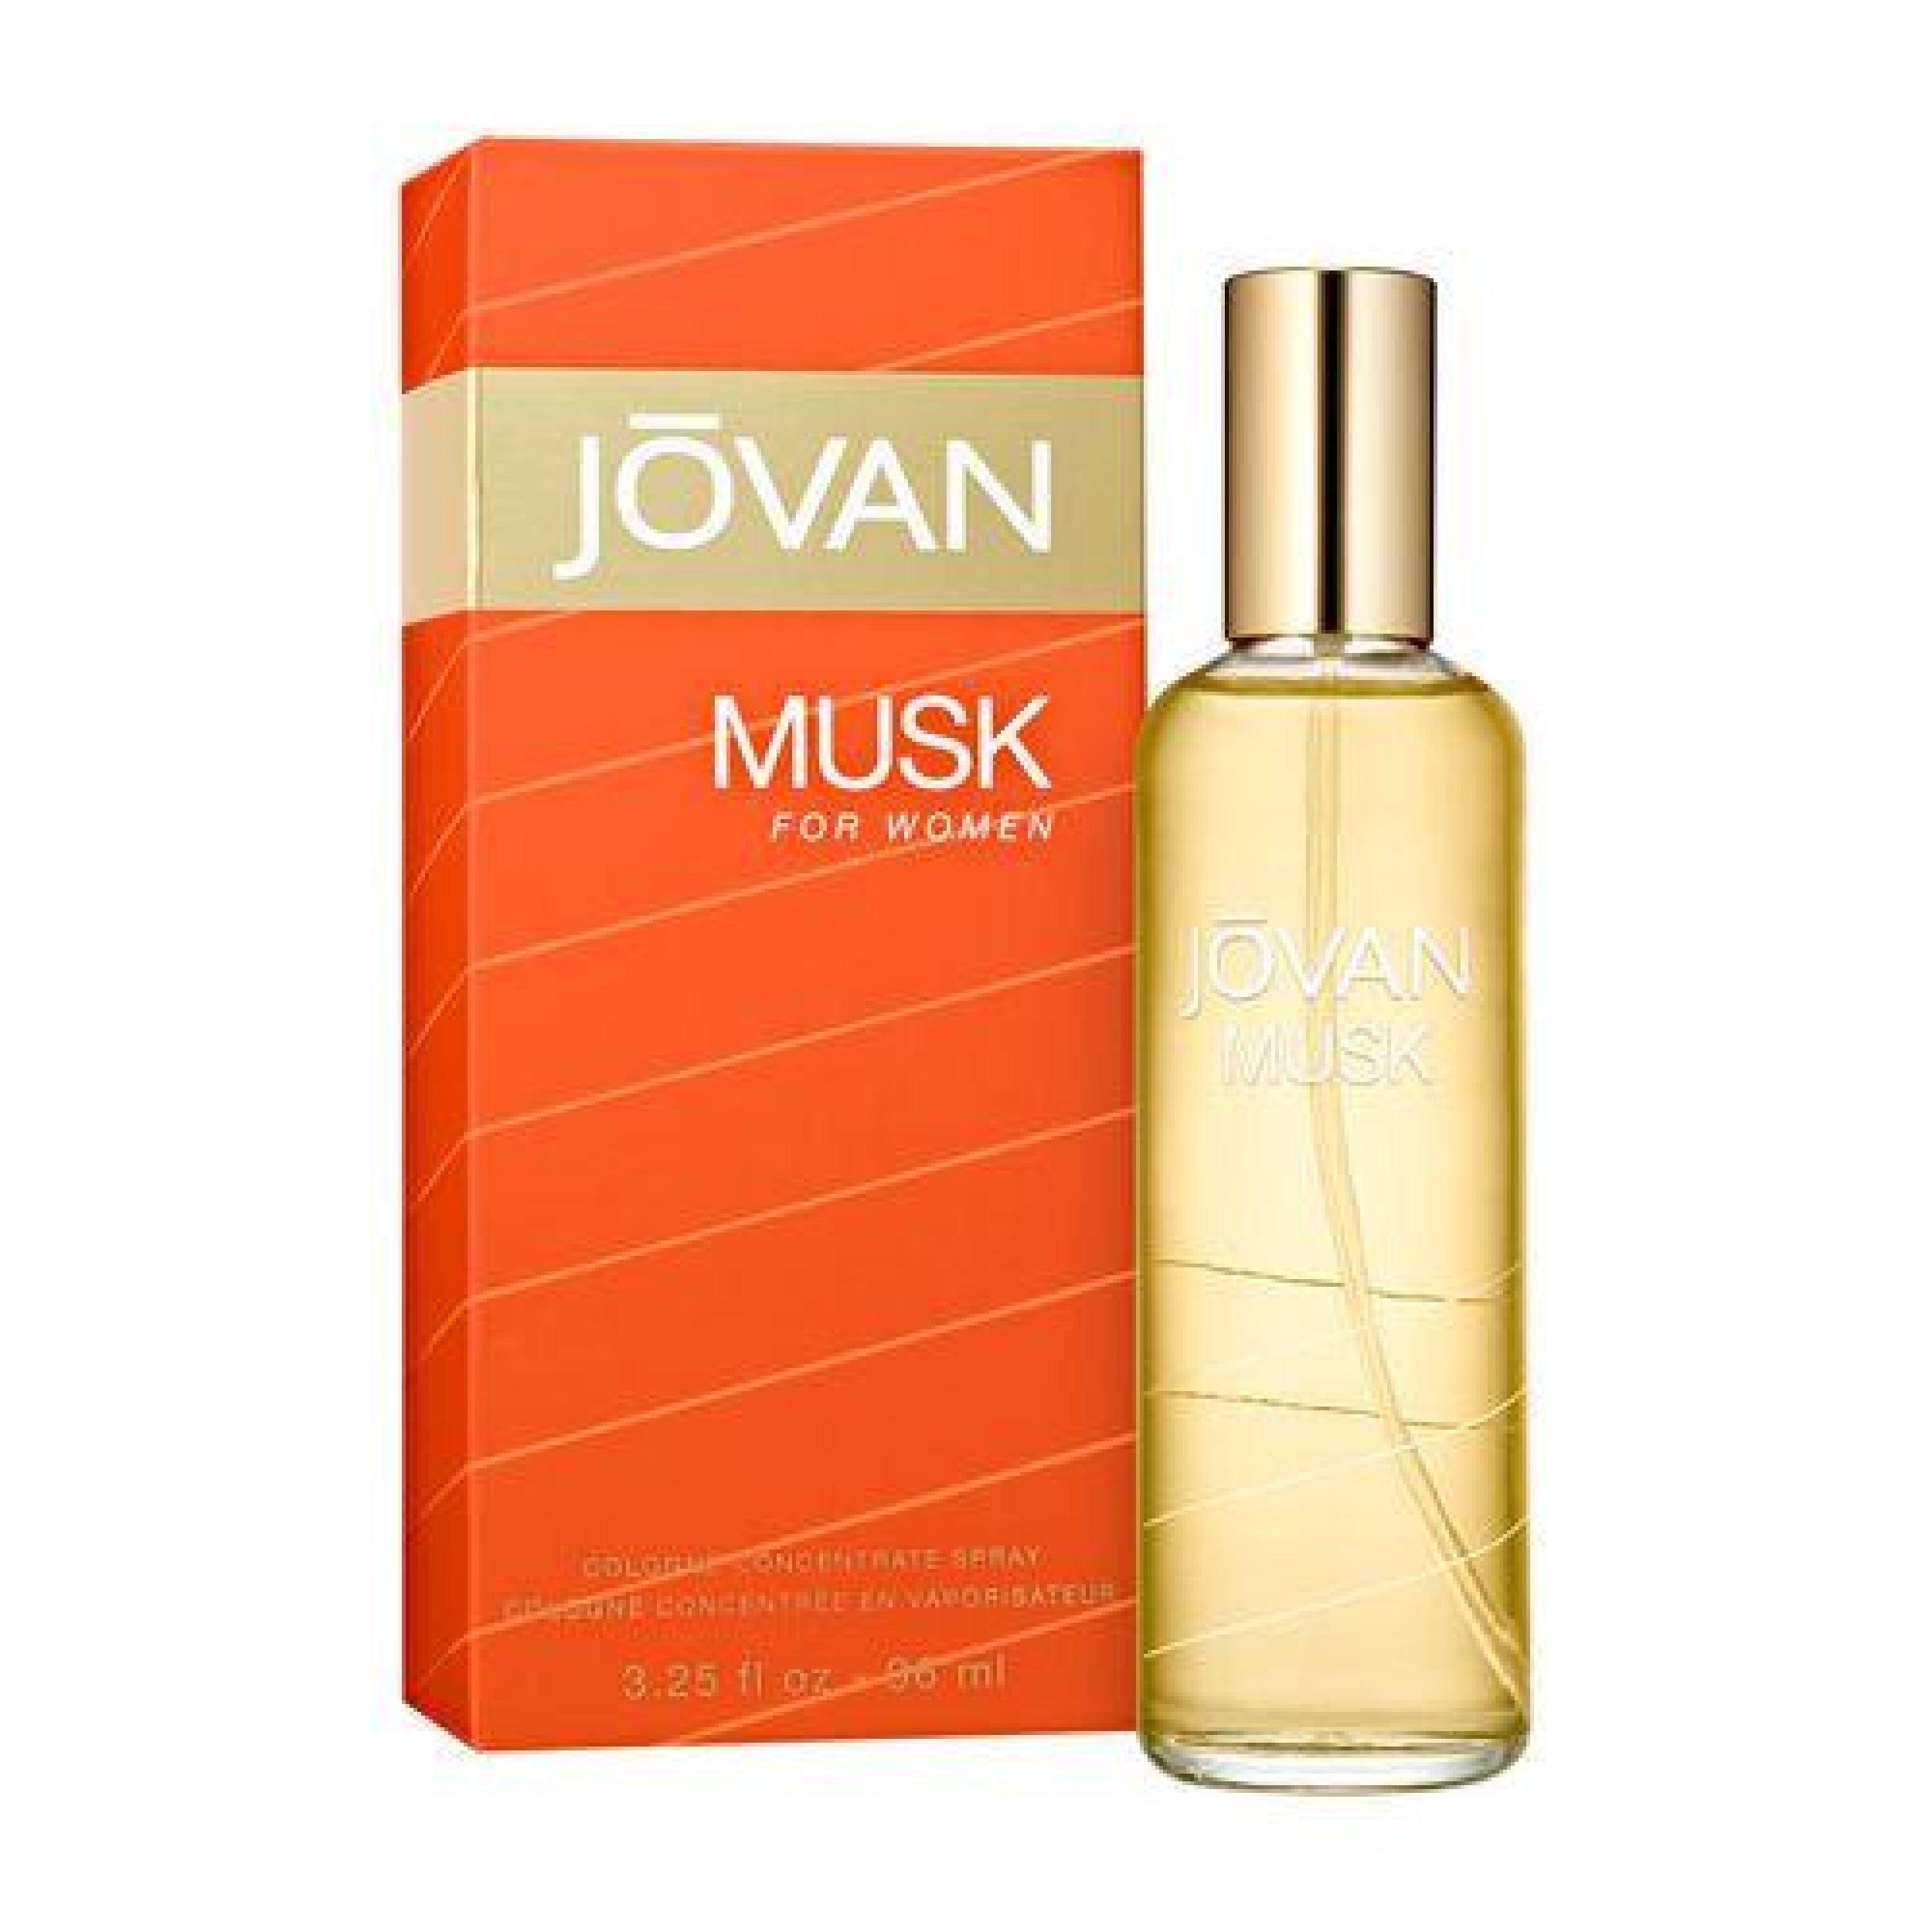 Jovan Musk 96Ml Cologne Spray (W)